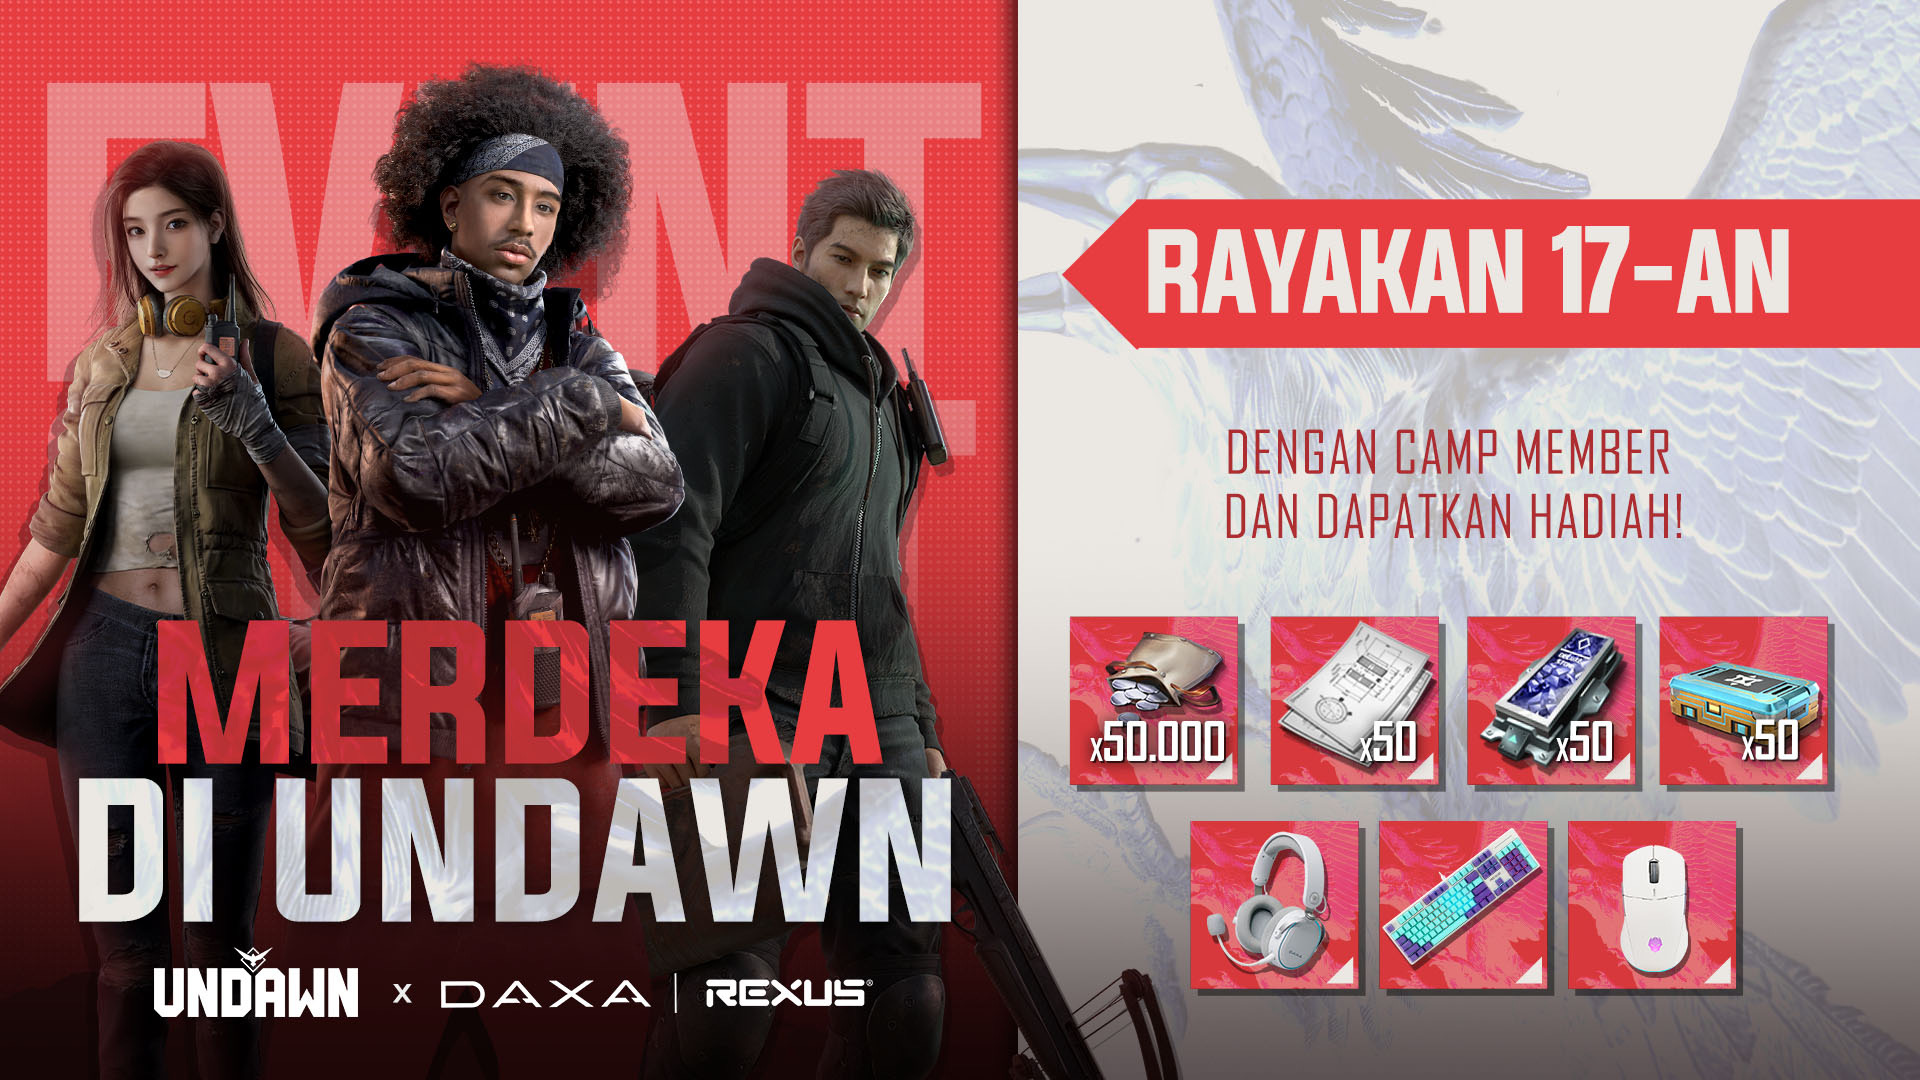 Rayakan Kemerdekaan Indonesia lewat Lomba Bertabur Hadiah di Undawn!